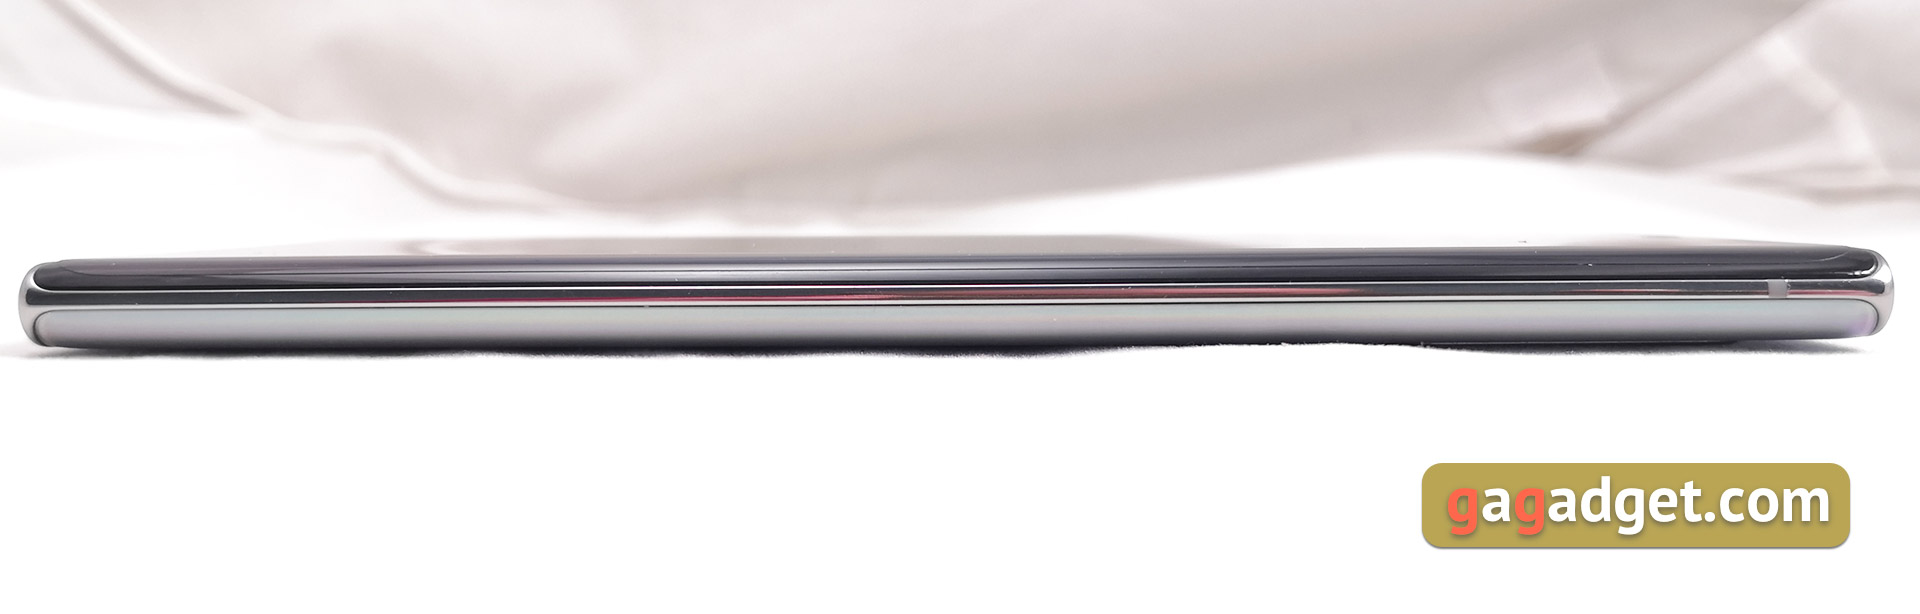 Огляд Samsung Galaxy Note10 +: найбільший та найтехнологічніший флагман на Android-9